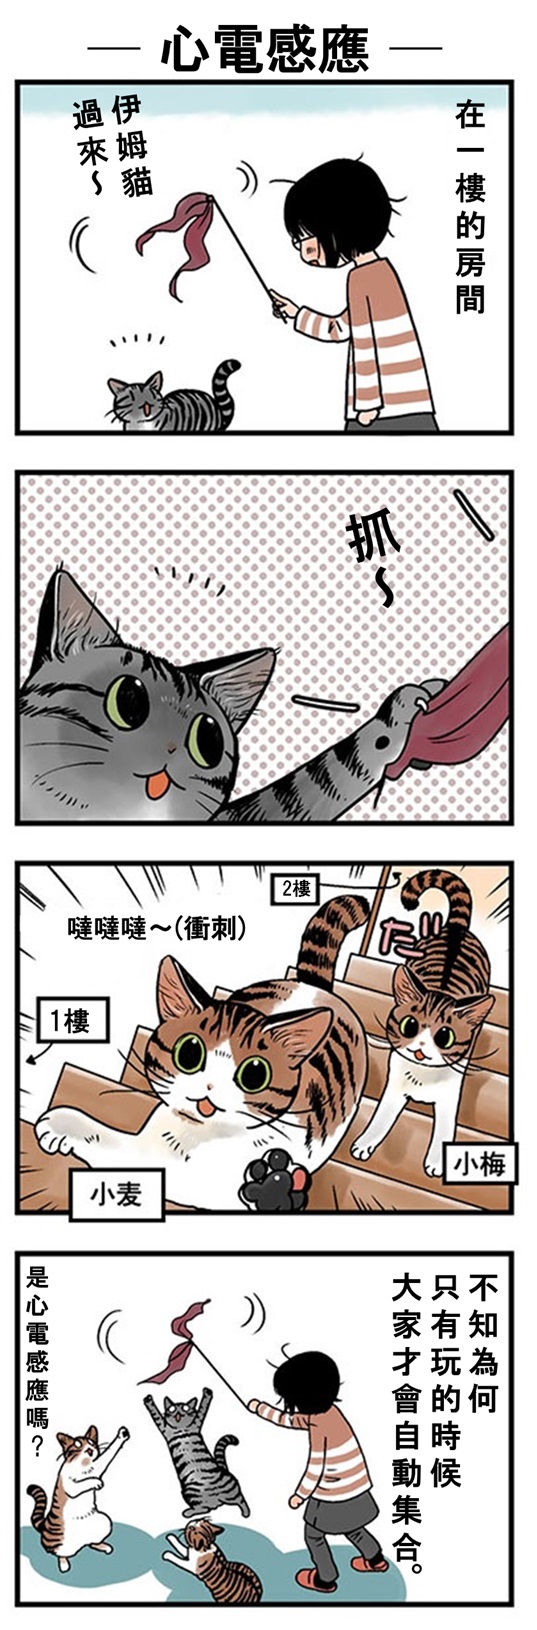 ★山野りんりん猫まみれ漫画★60話-2.jpg